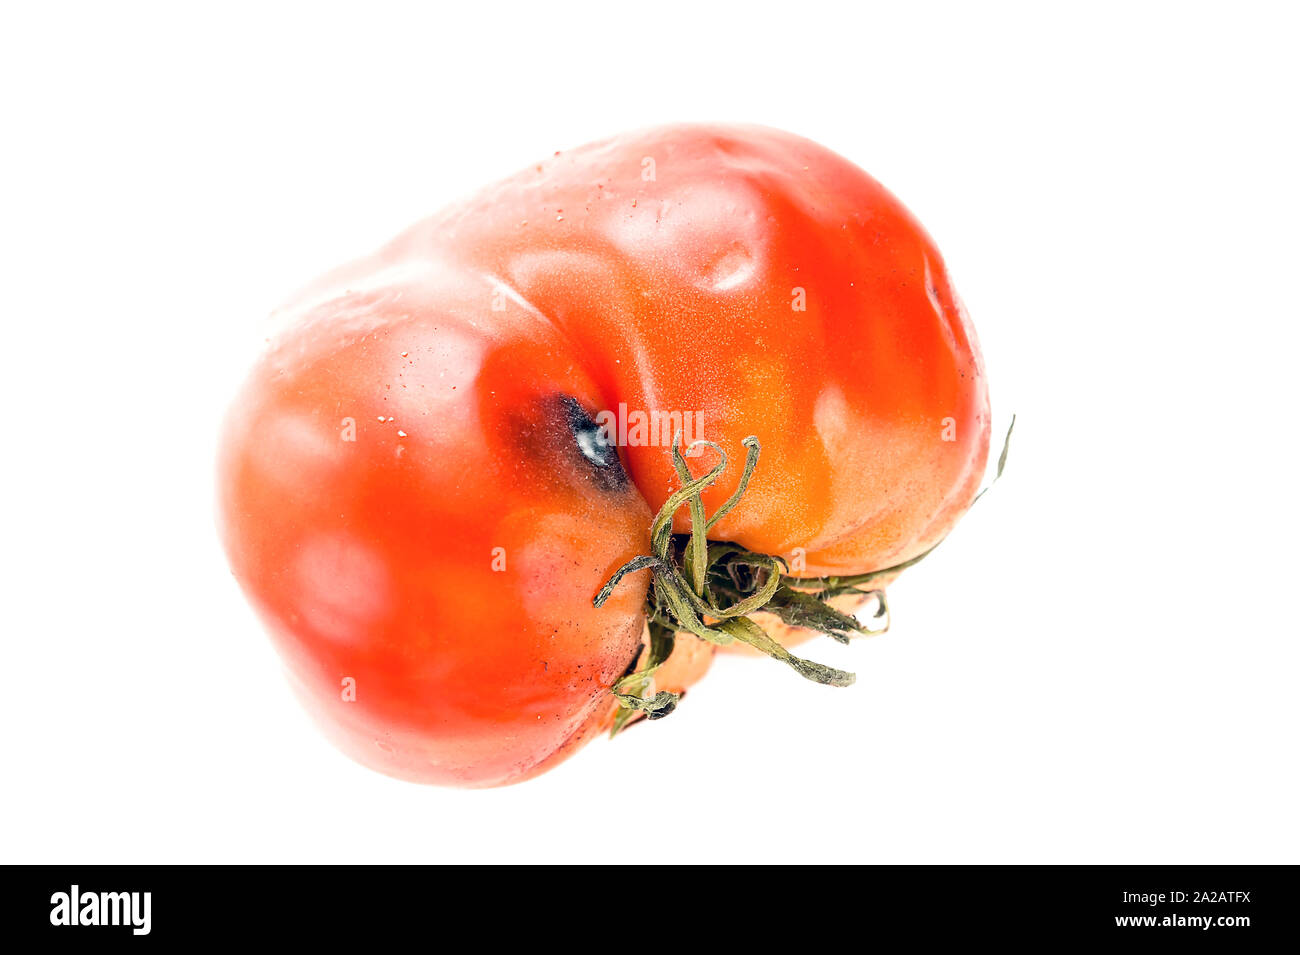 Tomate pourrie gâtée, avec les sépales ou Calice, maturation inégale et taches de moisissure sur la peau isolé sur fond blanc. Banque D'Images